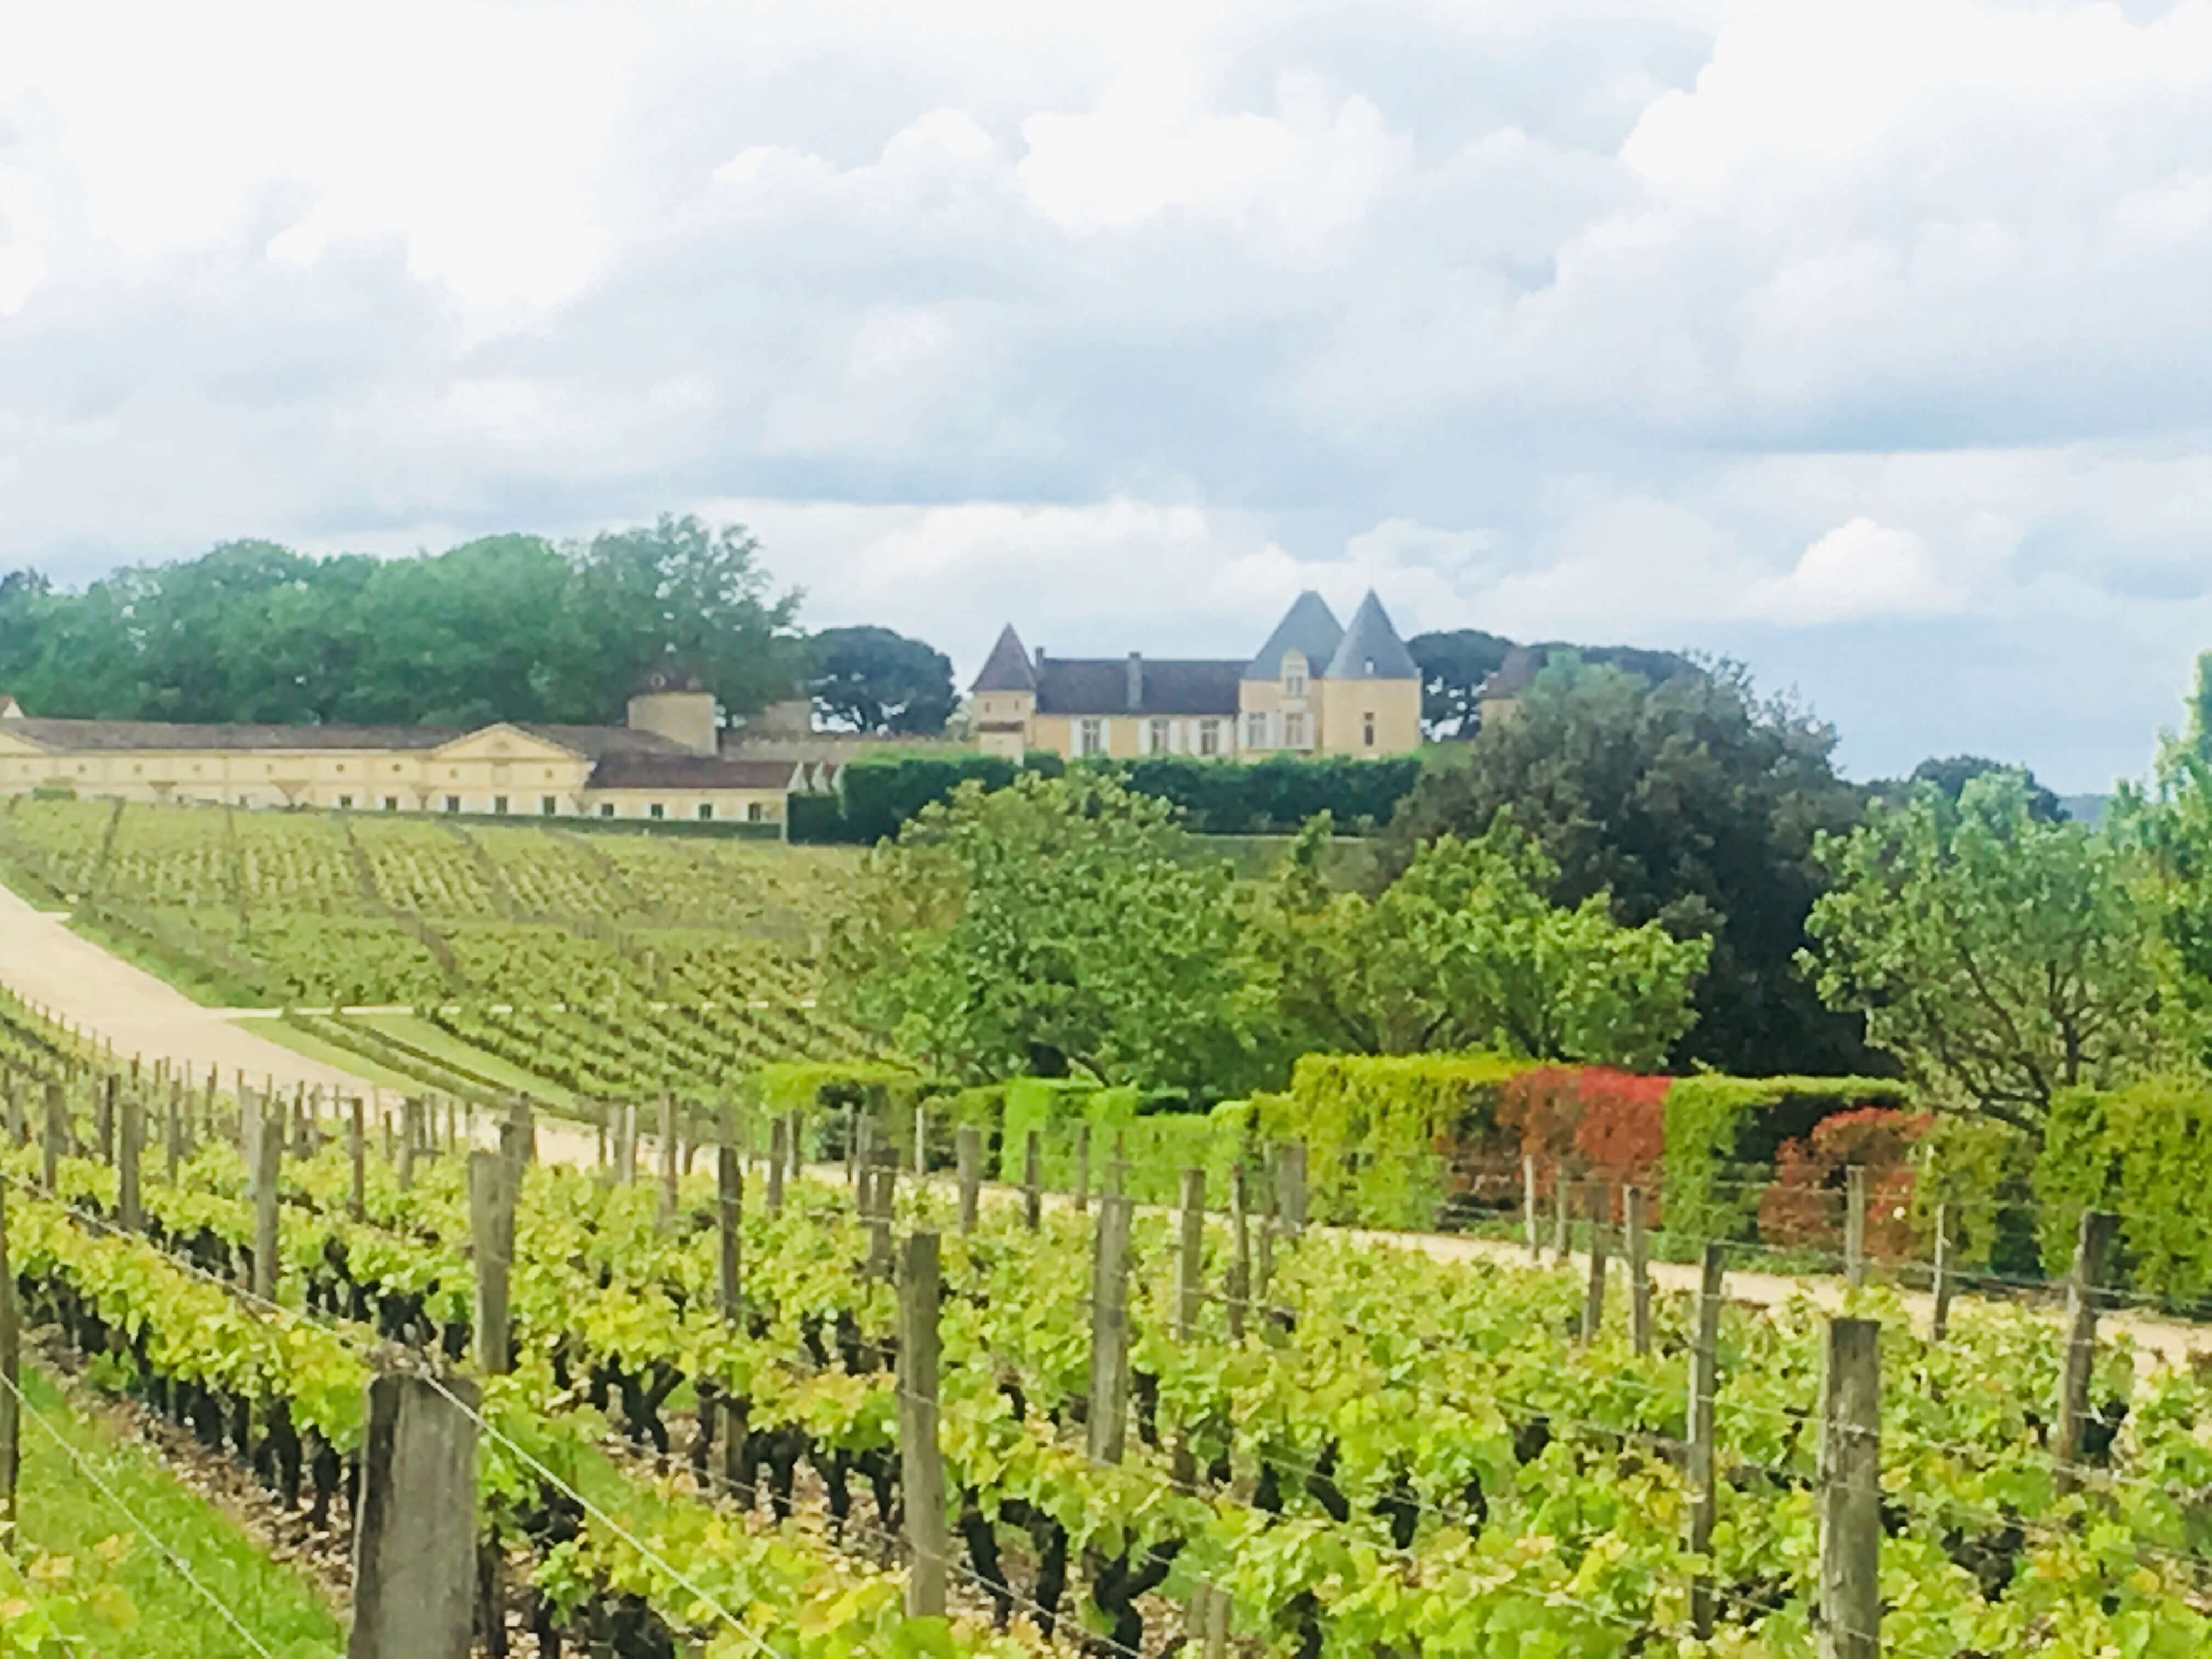 Bordeaux - ærverdige slott, dyre viner og ett av verdens mest prestisjefylte vindistrikt. Og, heldigvis: en vintur til Bordeaux er kun en kort og rimelig flytur unna Norge. Å få oppleve ulike vindistrikt, deres klima, vinstokker og måten de dyrkes på og smake på vinen er en stor glede.